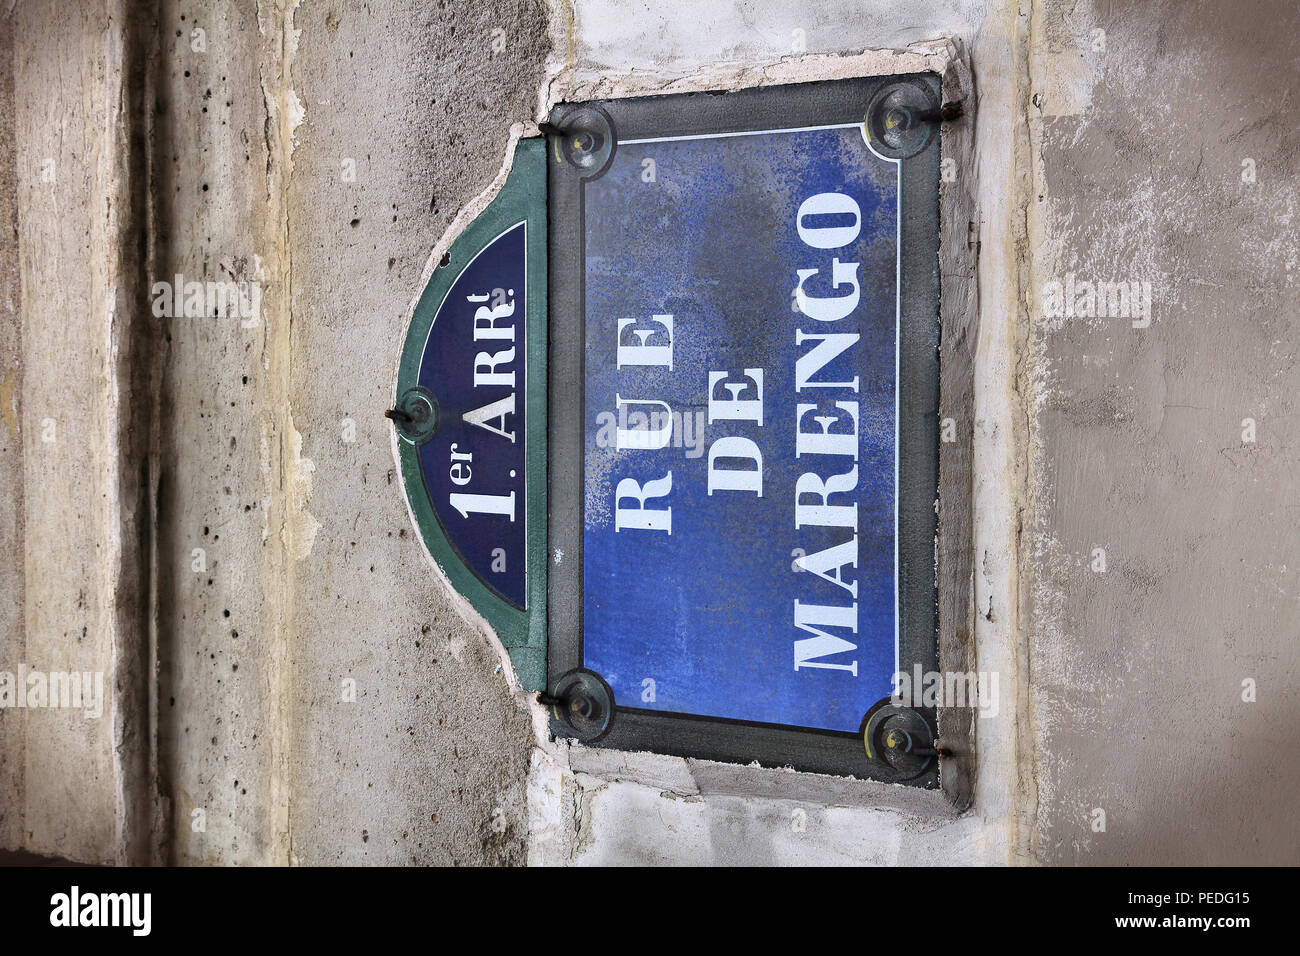 Paris, France - Rue de la vieille rue Marengo signe. Banque D'Images